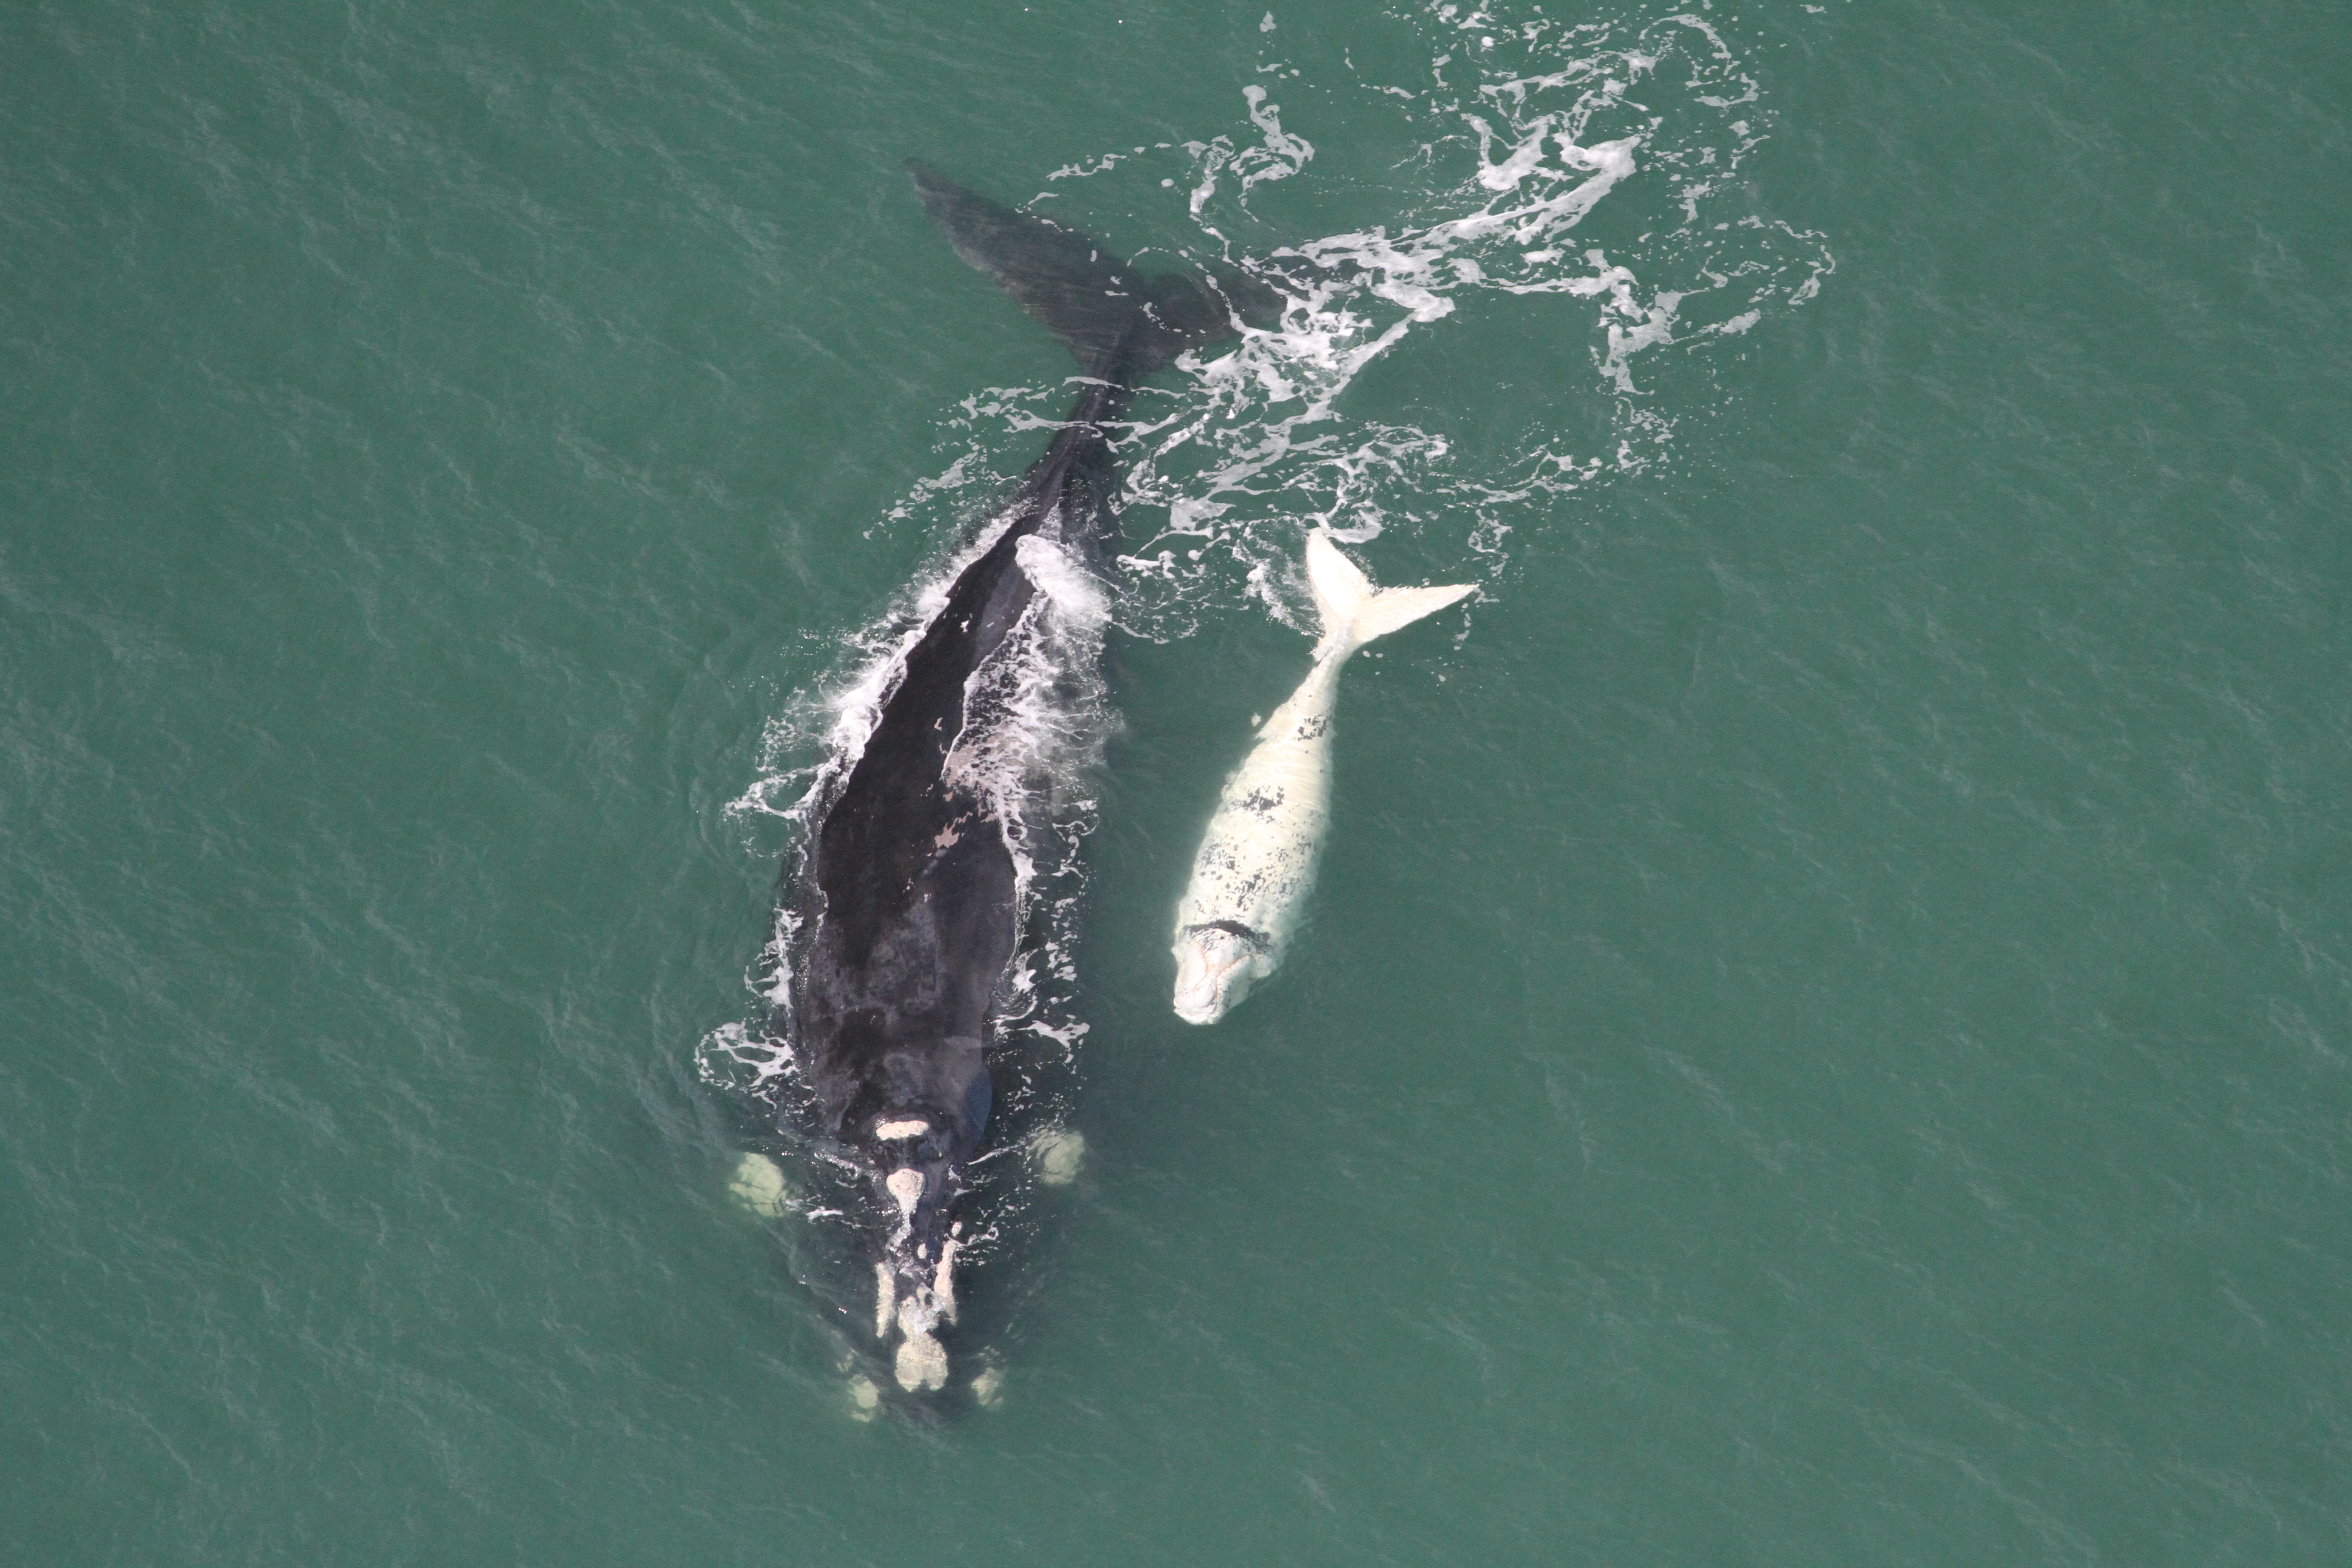 Segue emperrado o turismo de observação de baleias em SC